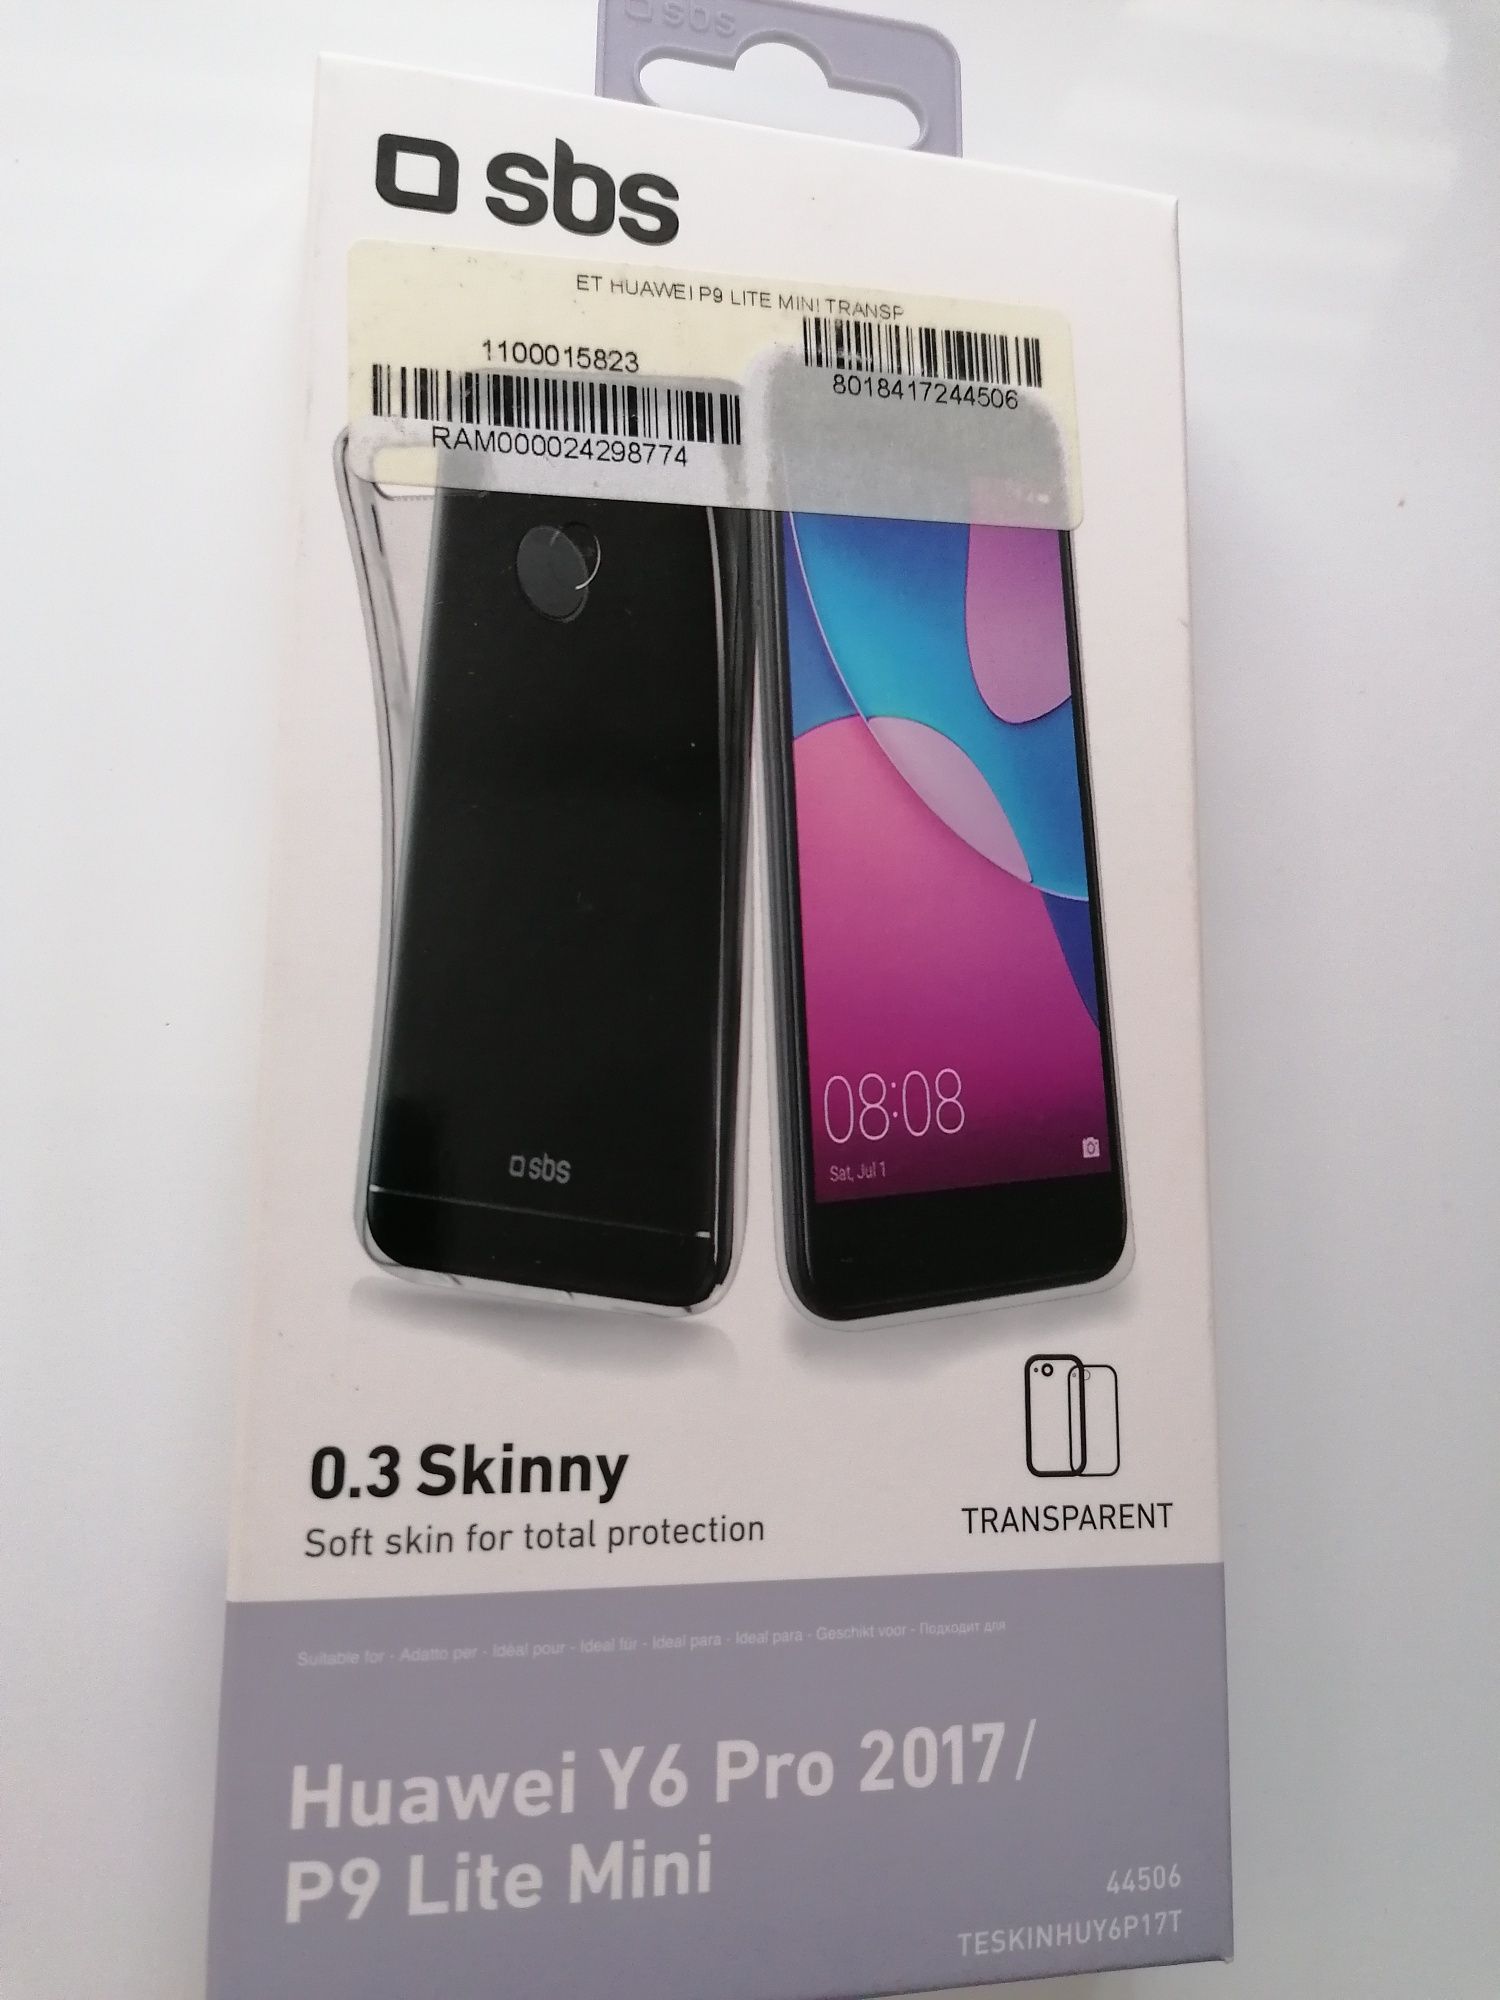 Etui sylikonowe do telefonów Samsung Galaxy A7, Huawei P9, LG K8 i K9